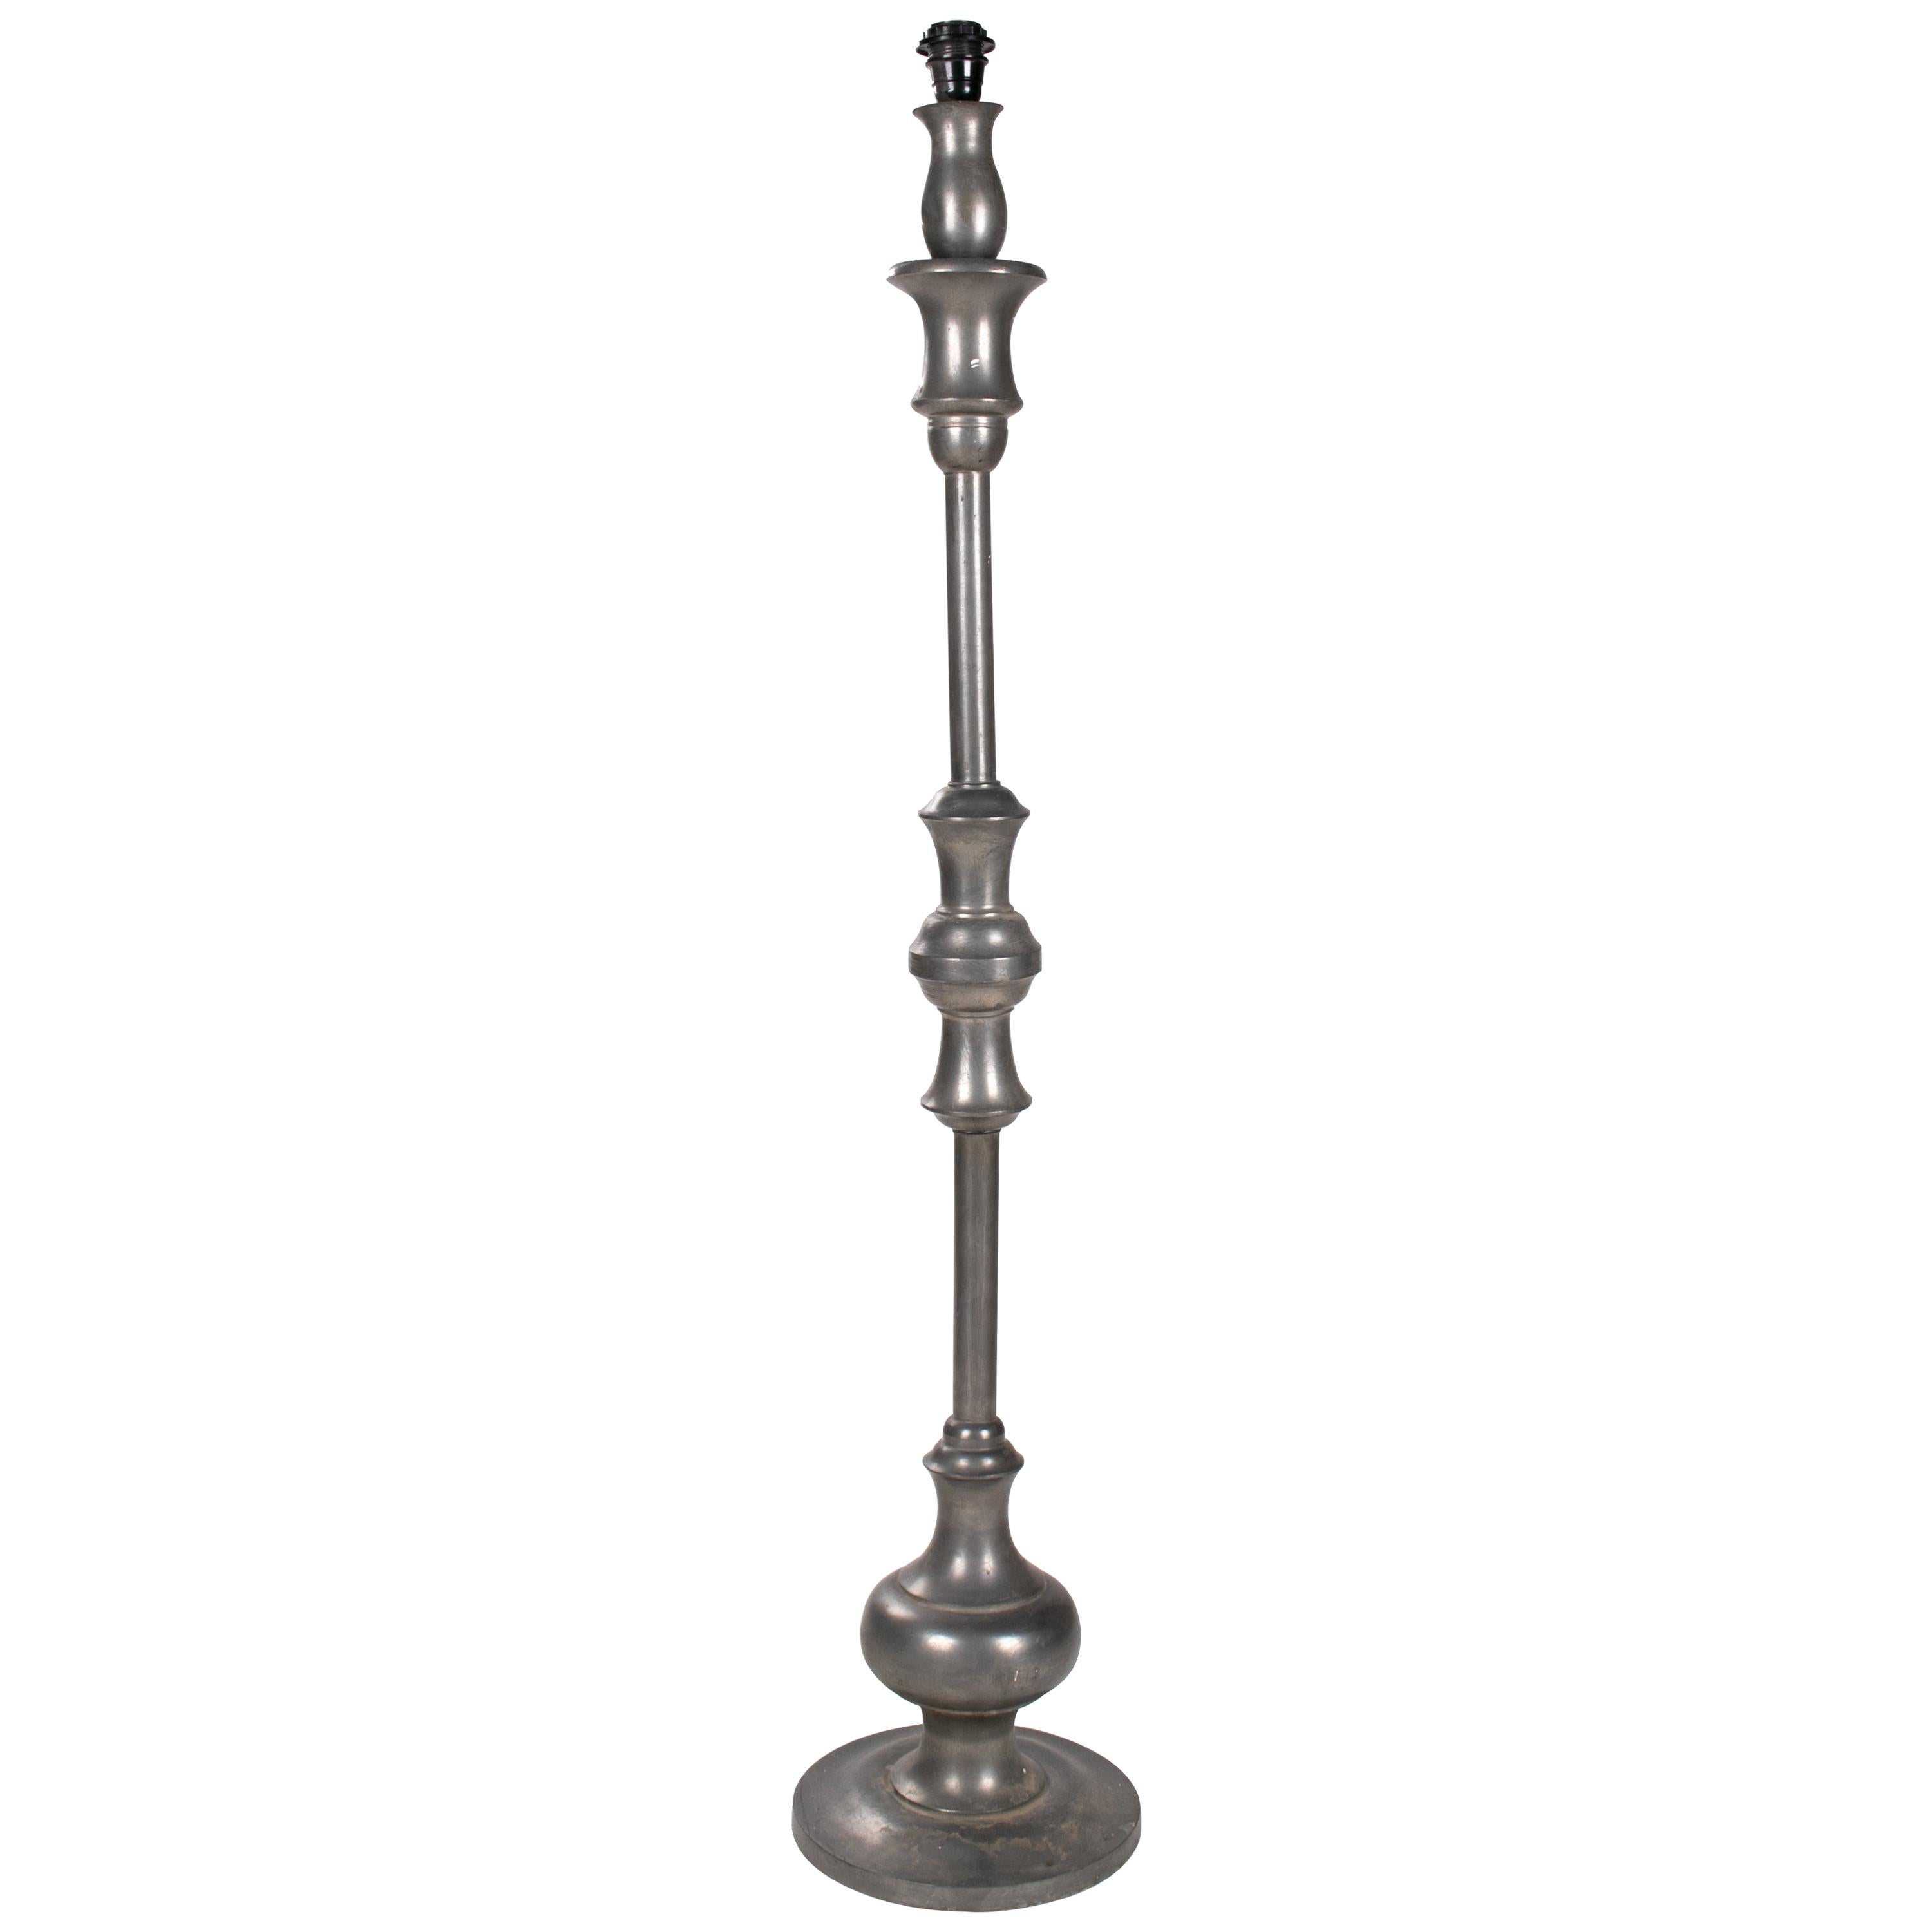 1980s French Metallic Standing Lamp